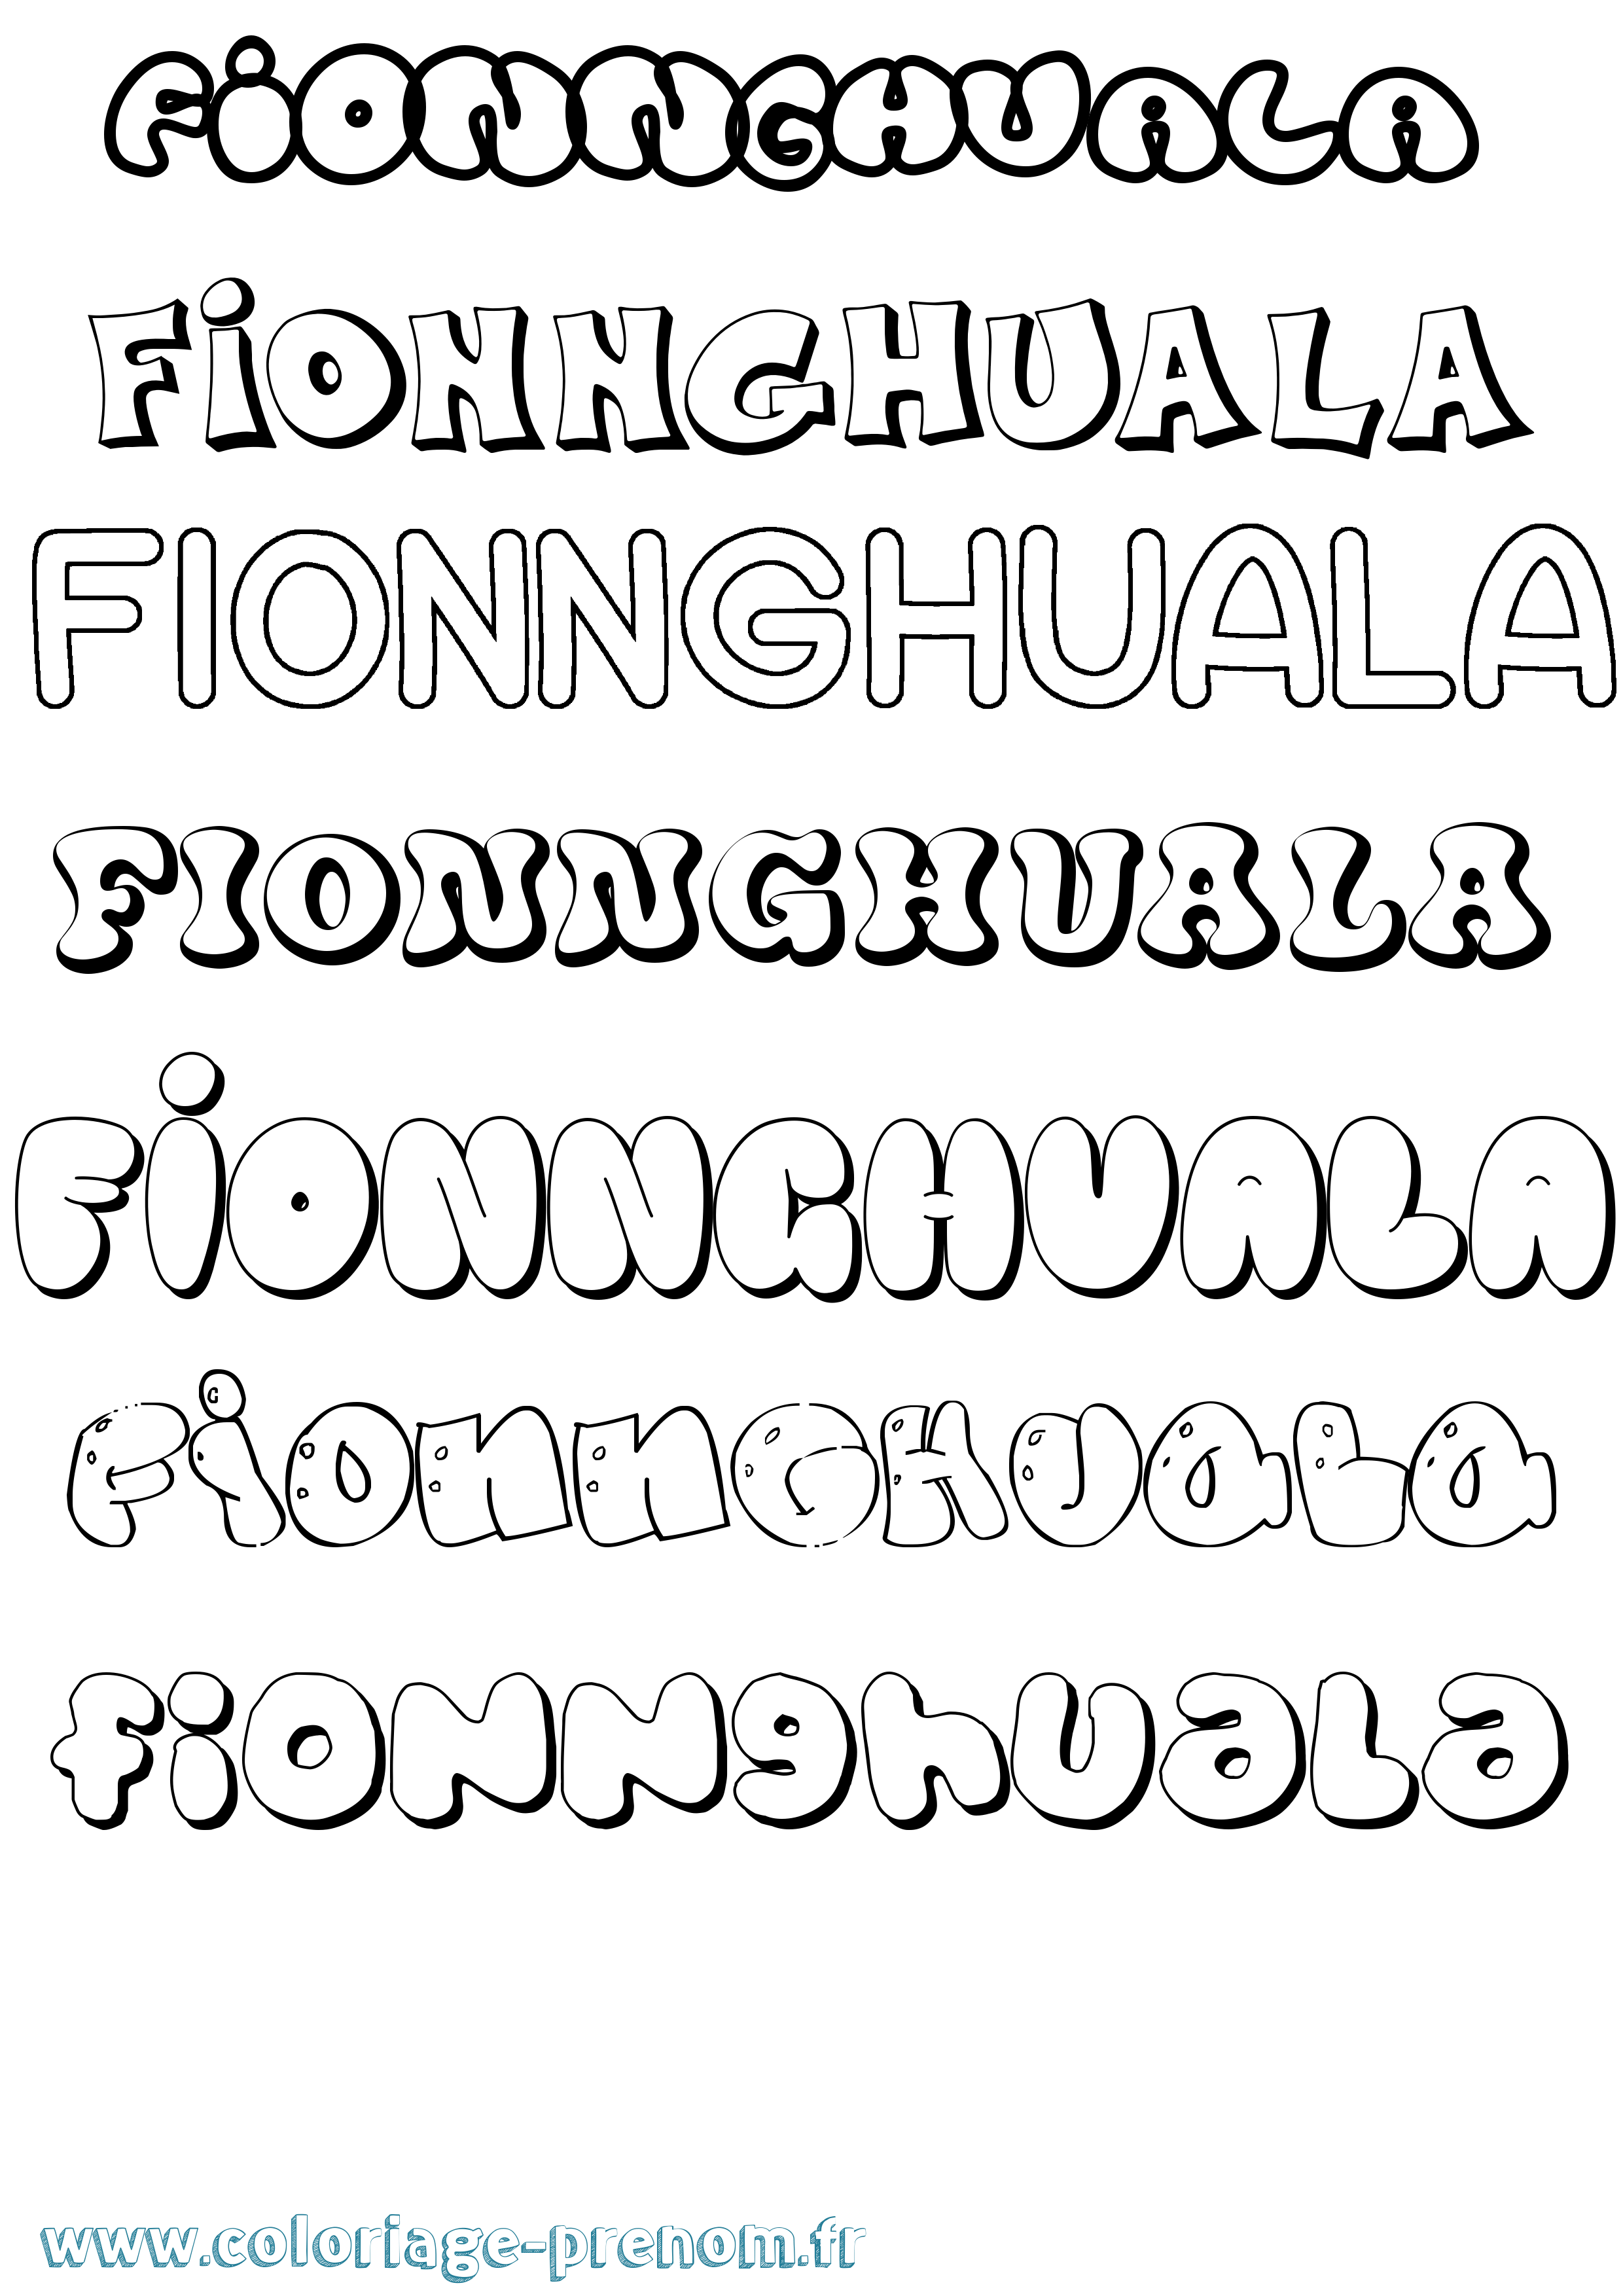 Coloriage prénom Fionnghuala Bubble